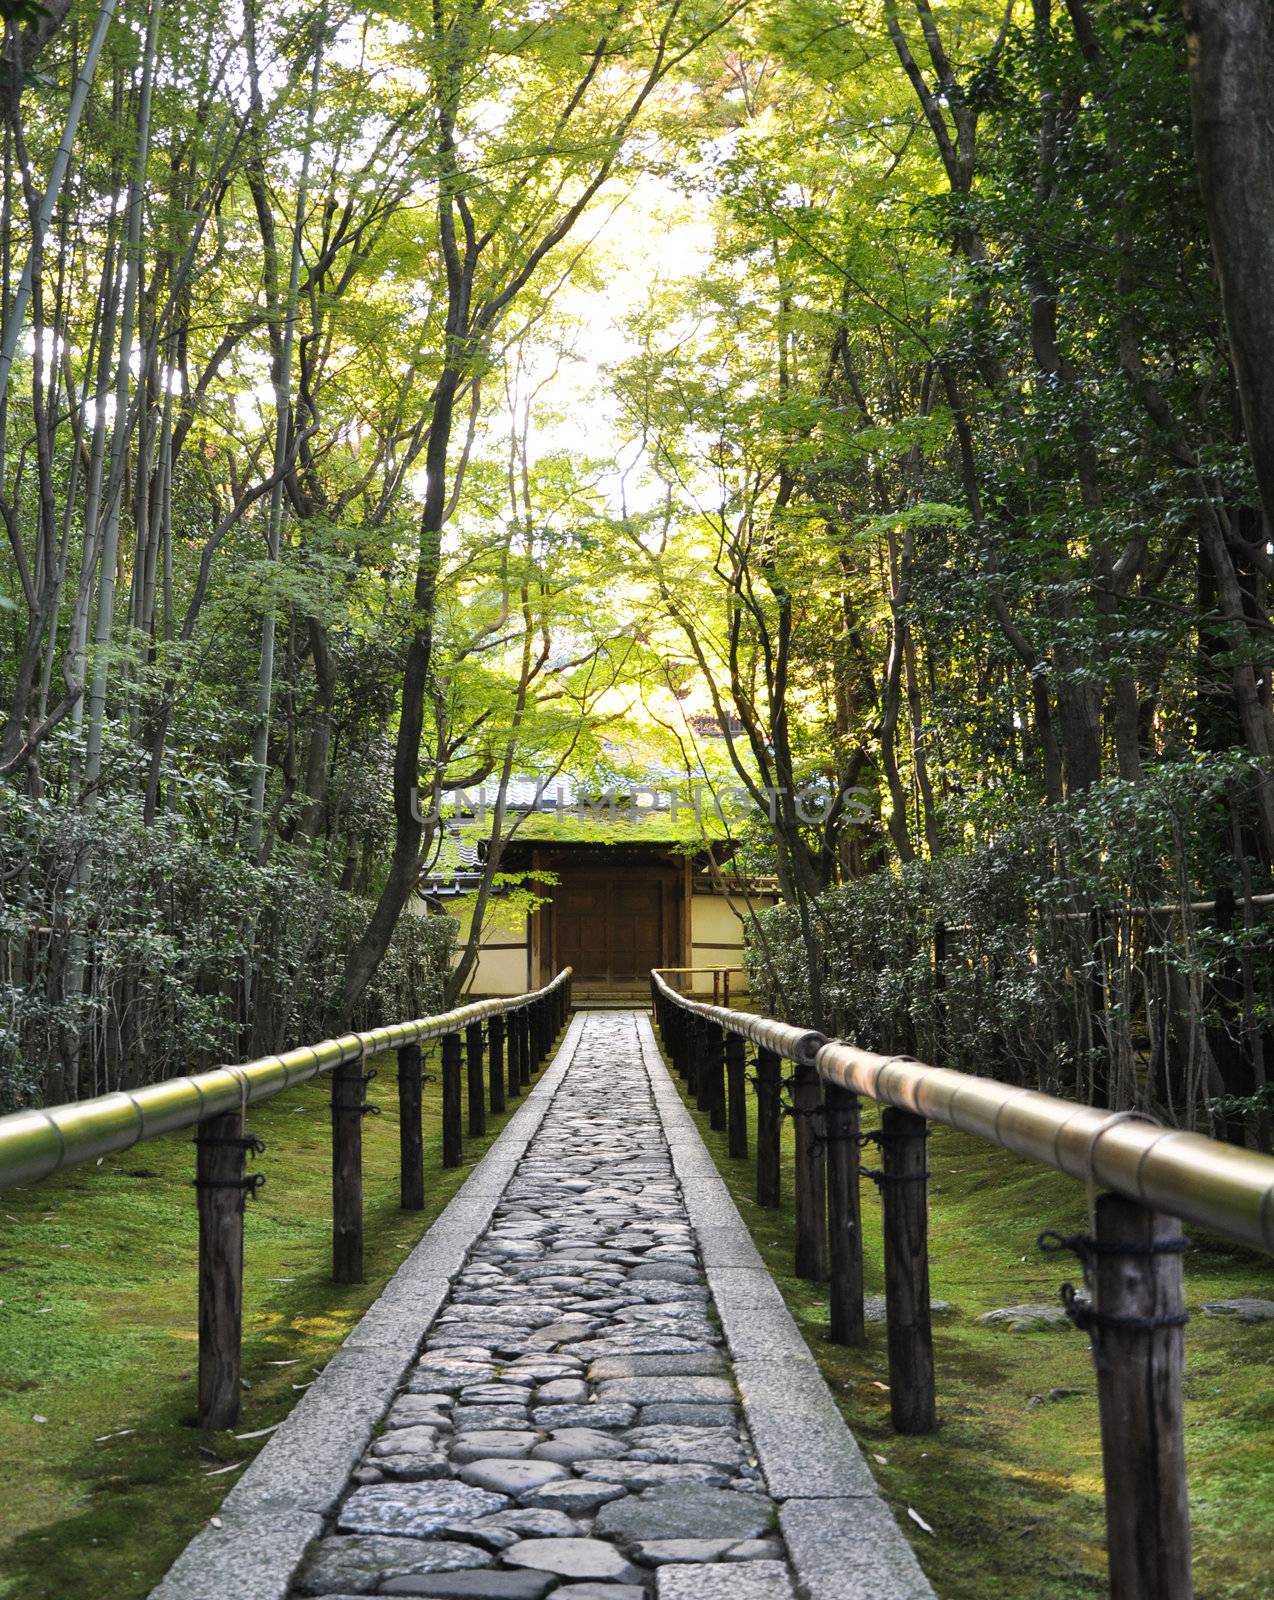 Koto-in a sub-temple of Daitoku-ji - Kyoto, Japan  by siraanamwong